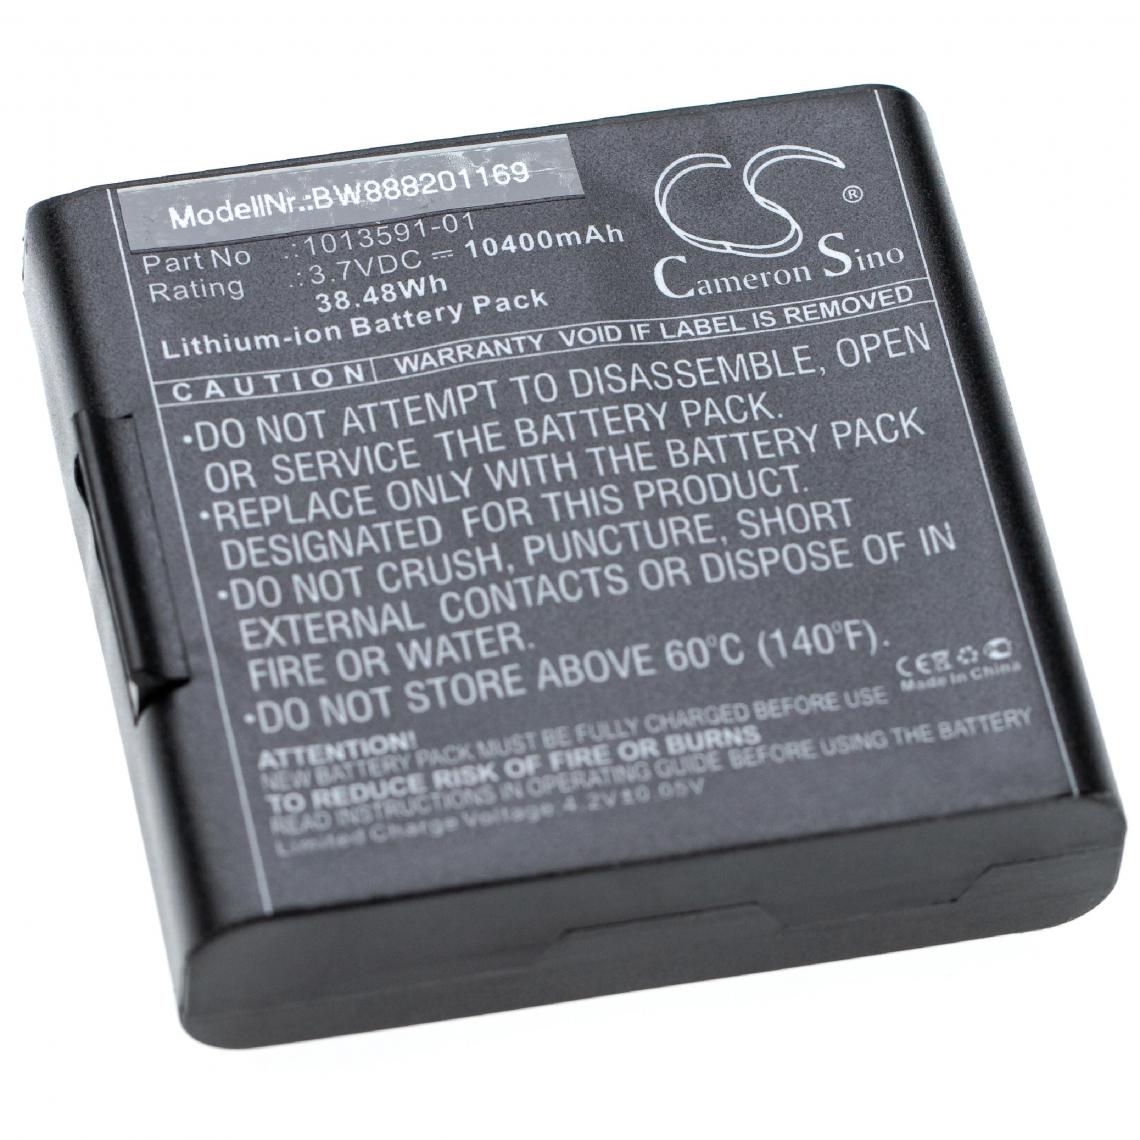 Vhbw - vhbw batterie remplace 1013591-01 pour scanner portable handheld (10400mAh, 3,7V, Li-Ion) - Piles rechargeables